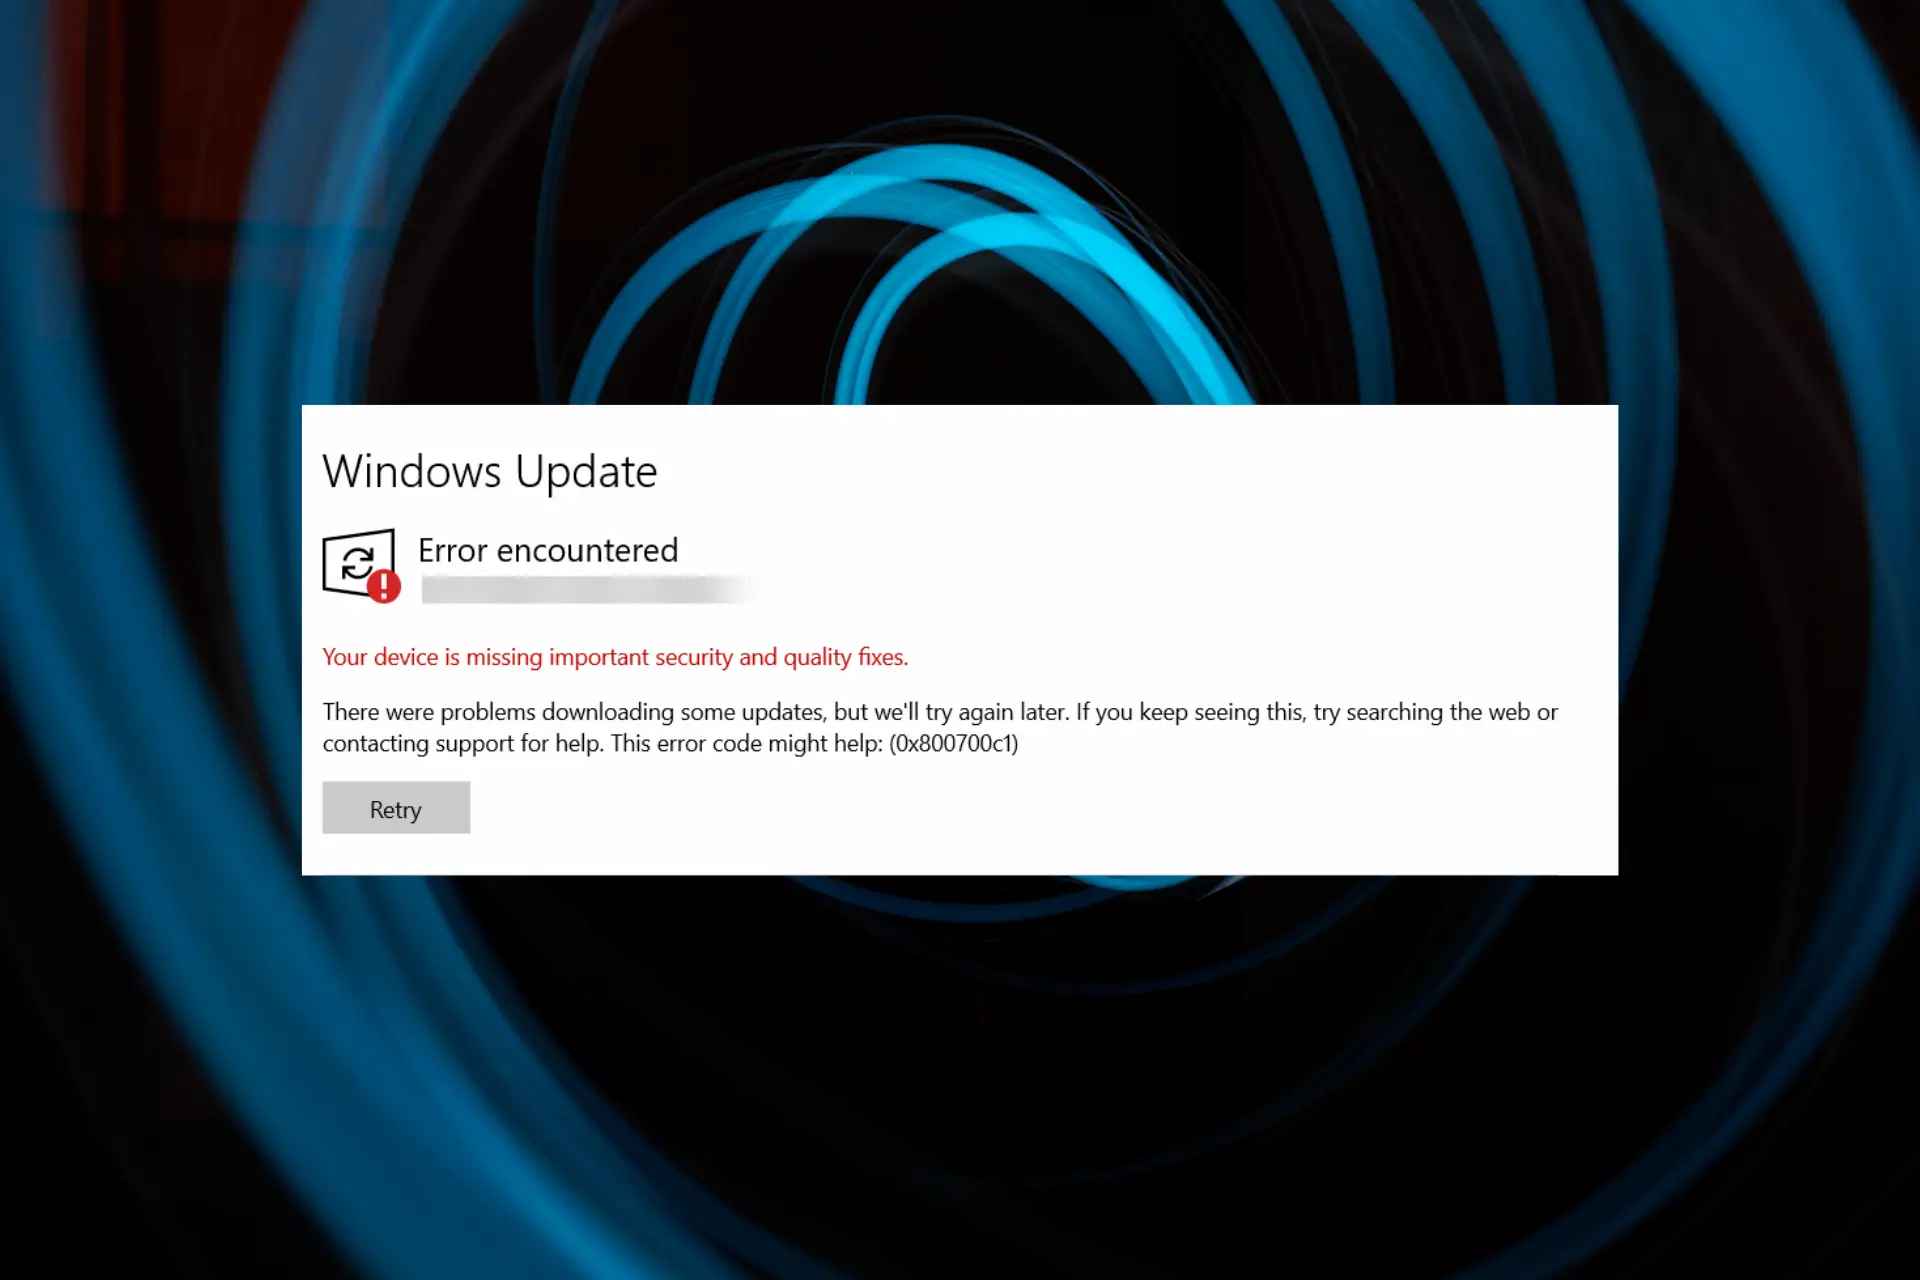 Cómo Reparar El Error De Actualización De Windows 800700c1 Expertos En Linea 5394